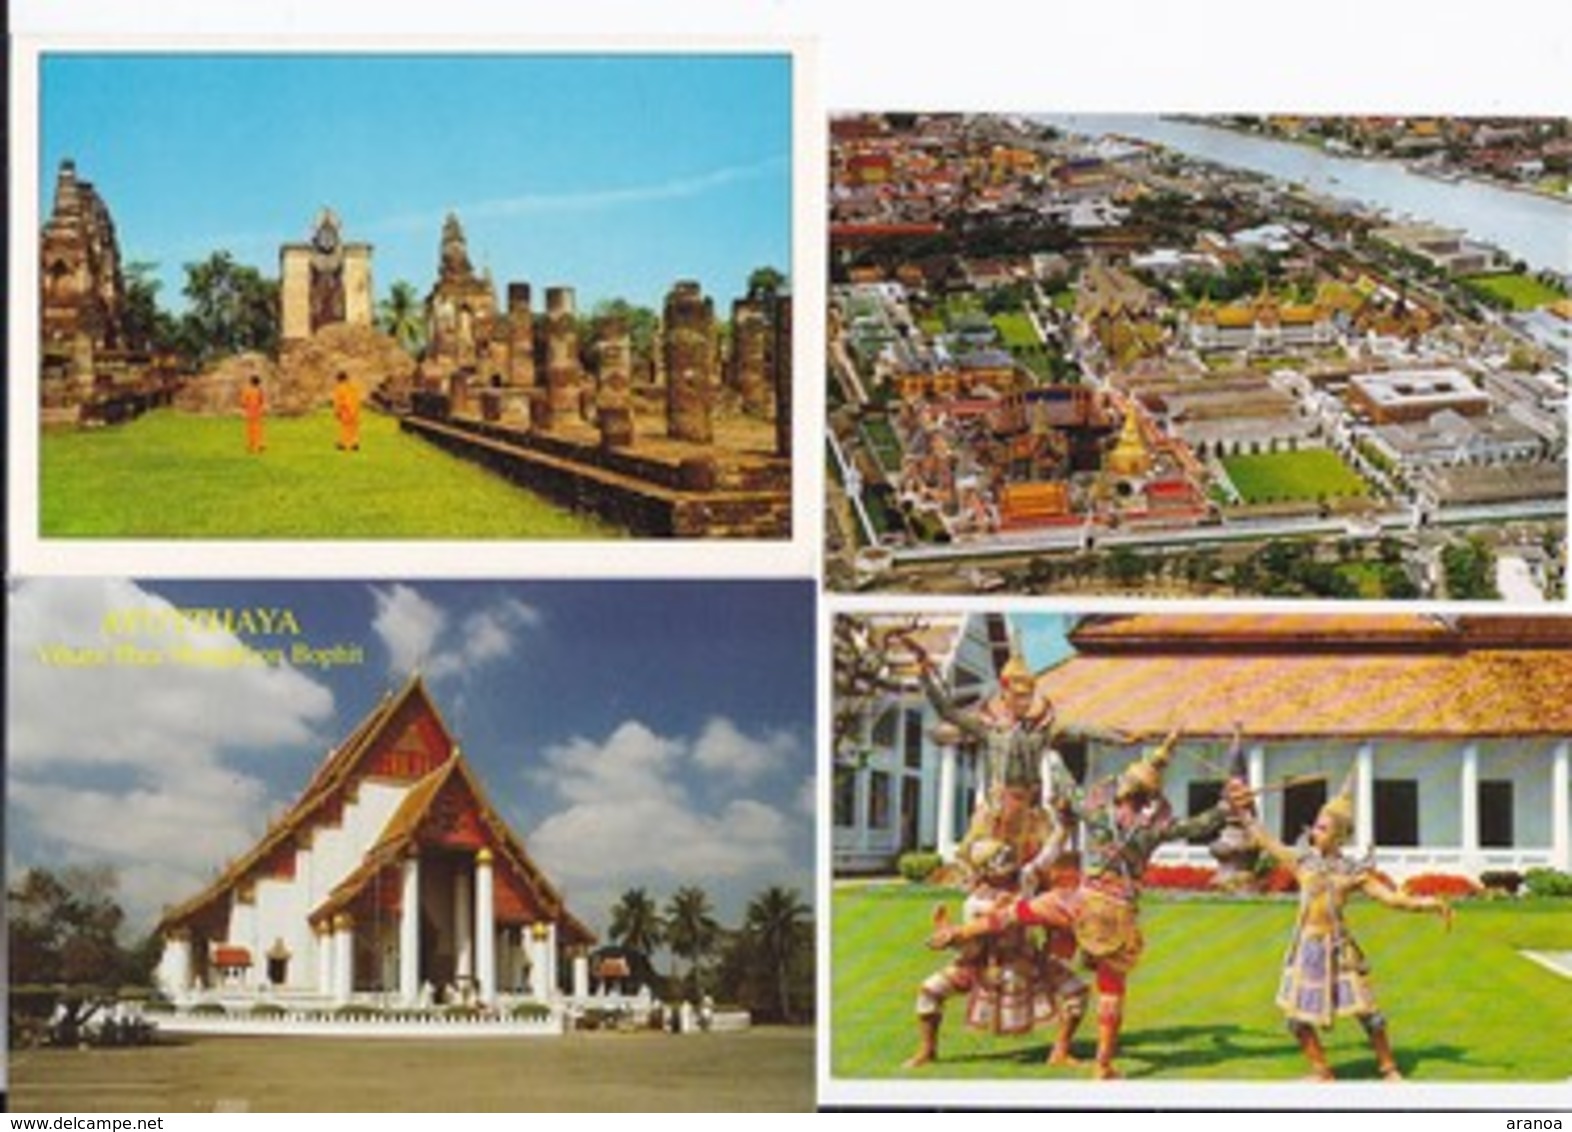 Thailande -- Lot de 48 cartes dont une image